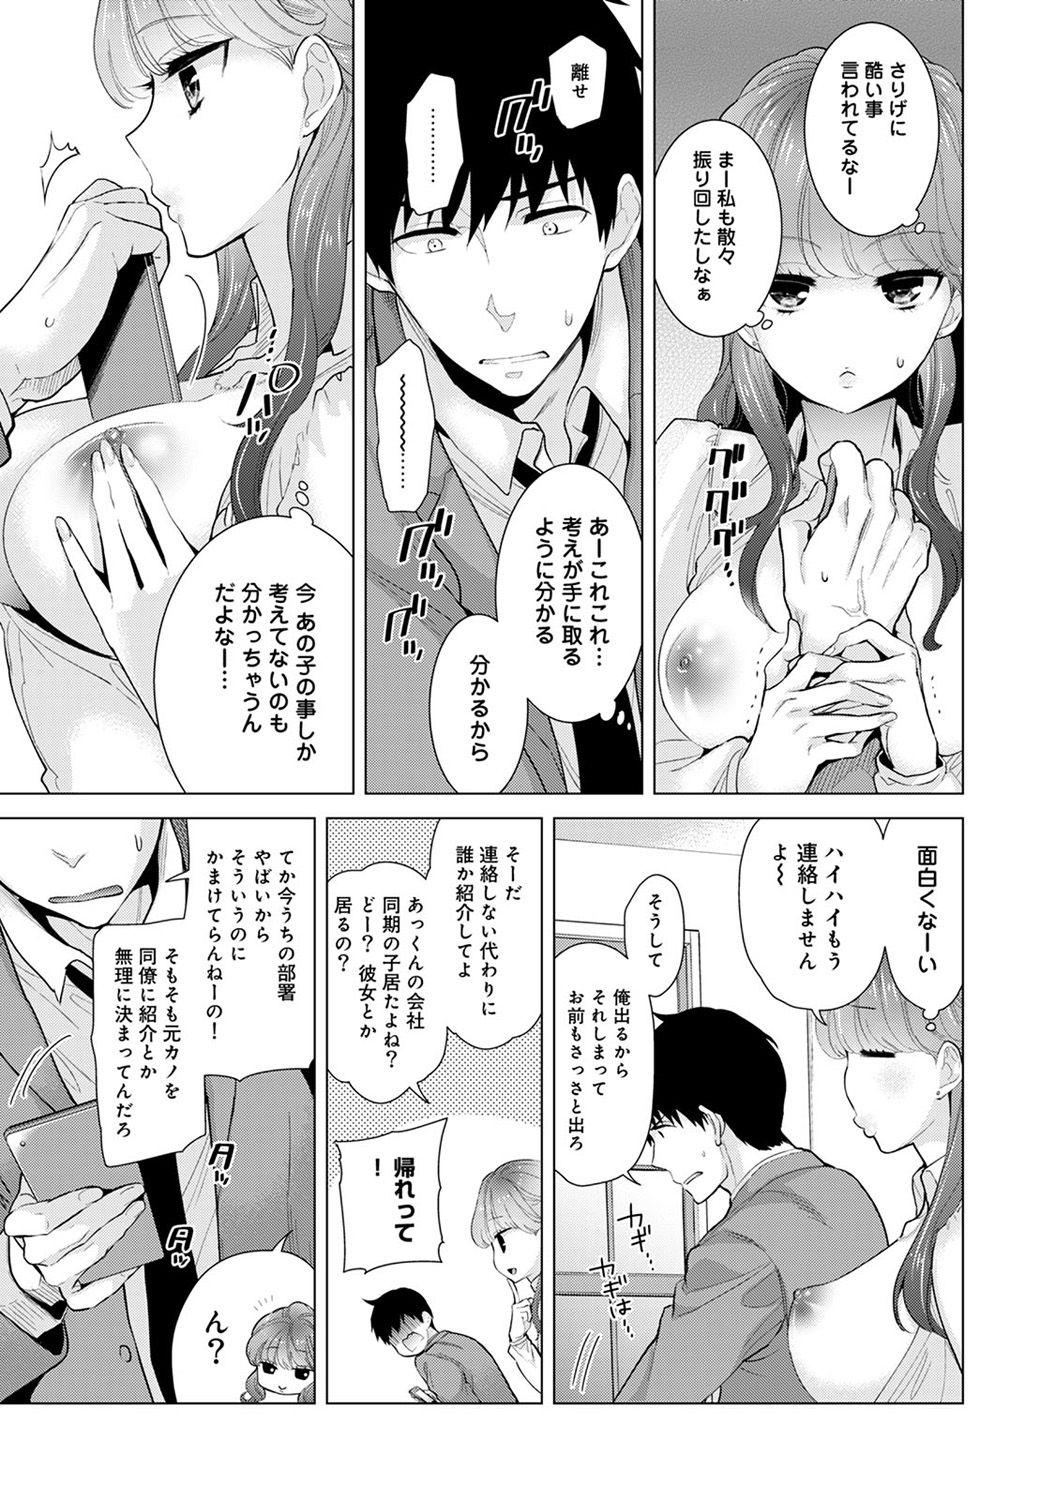 Rubdown COMIC Ananga Ranga Vol. 23 Anime - Page 7